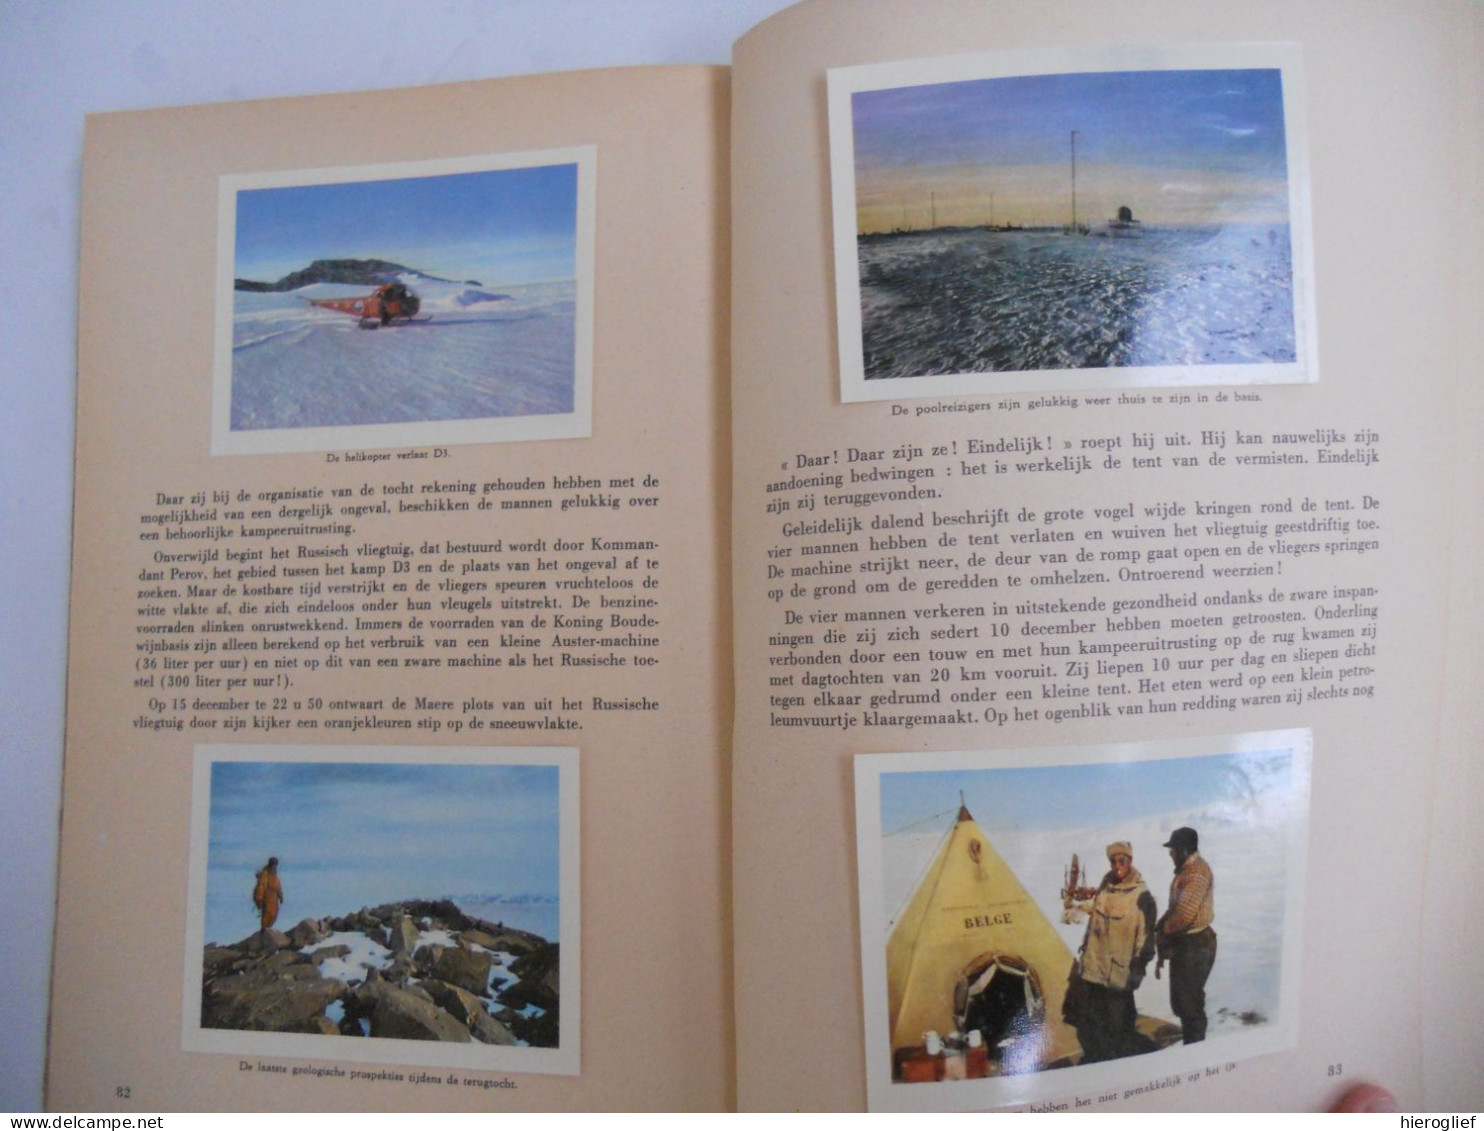 ANTARCTIC Belgische Zuidpool expeditie - album côte d'or - bevat 100 chromo's vd 164 antarctica